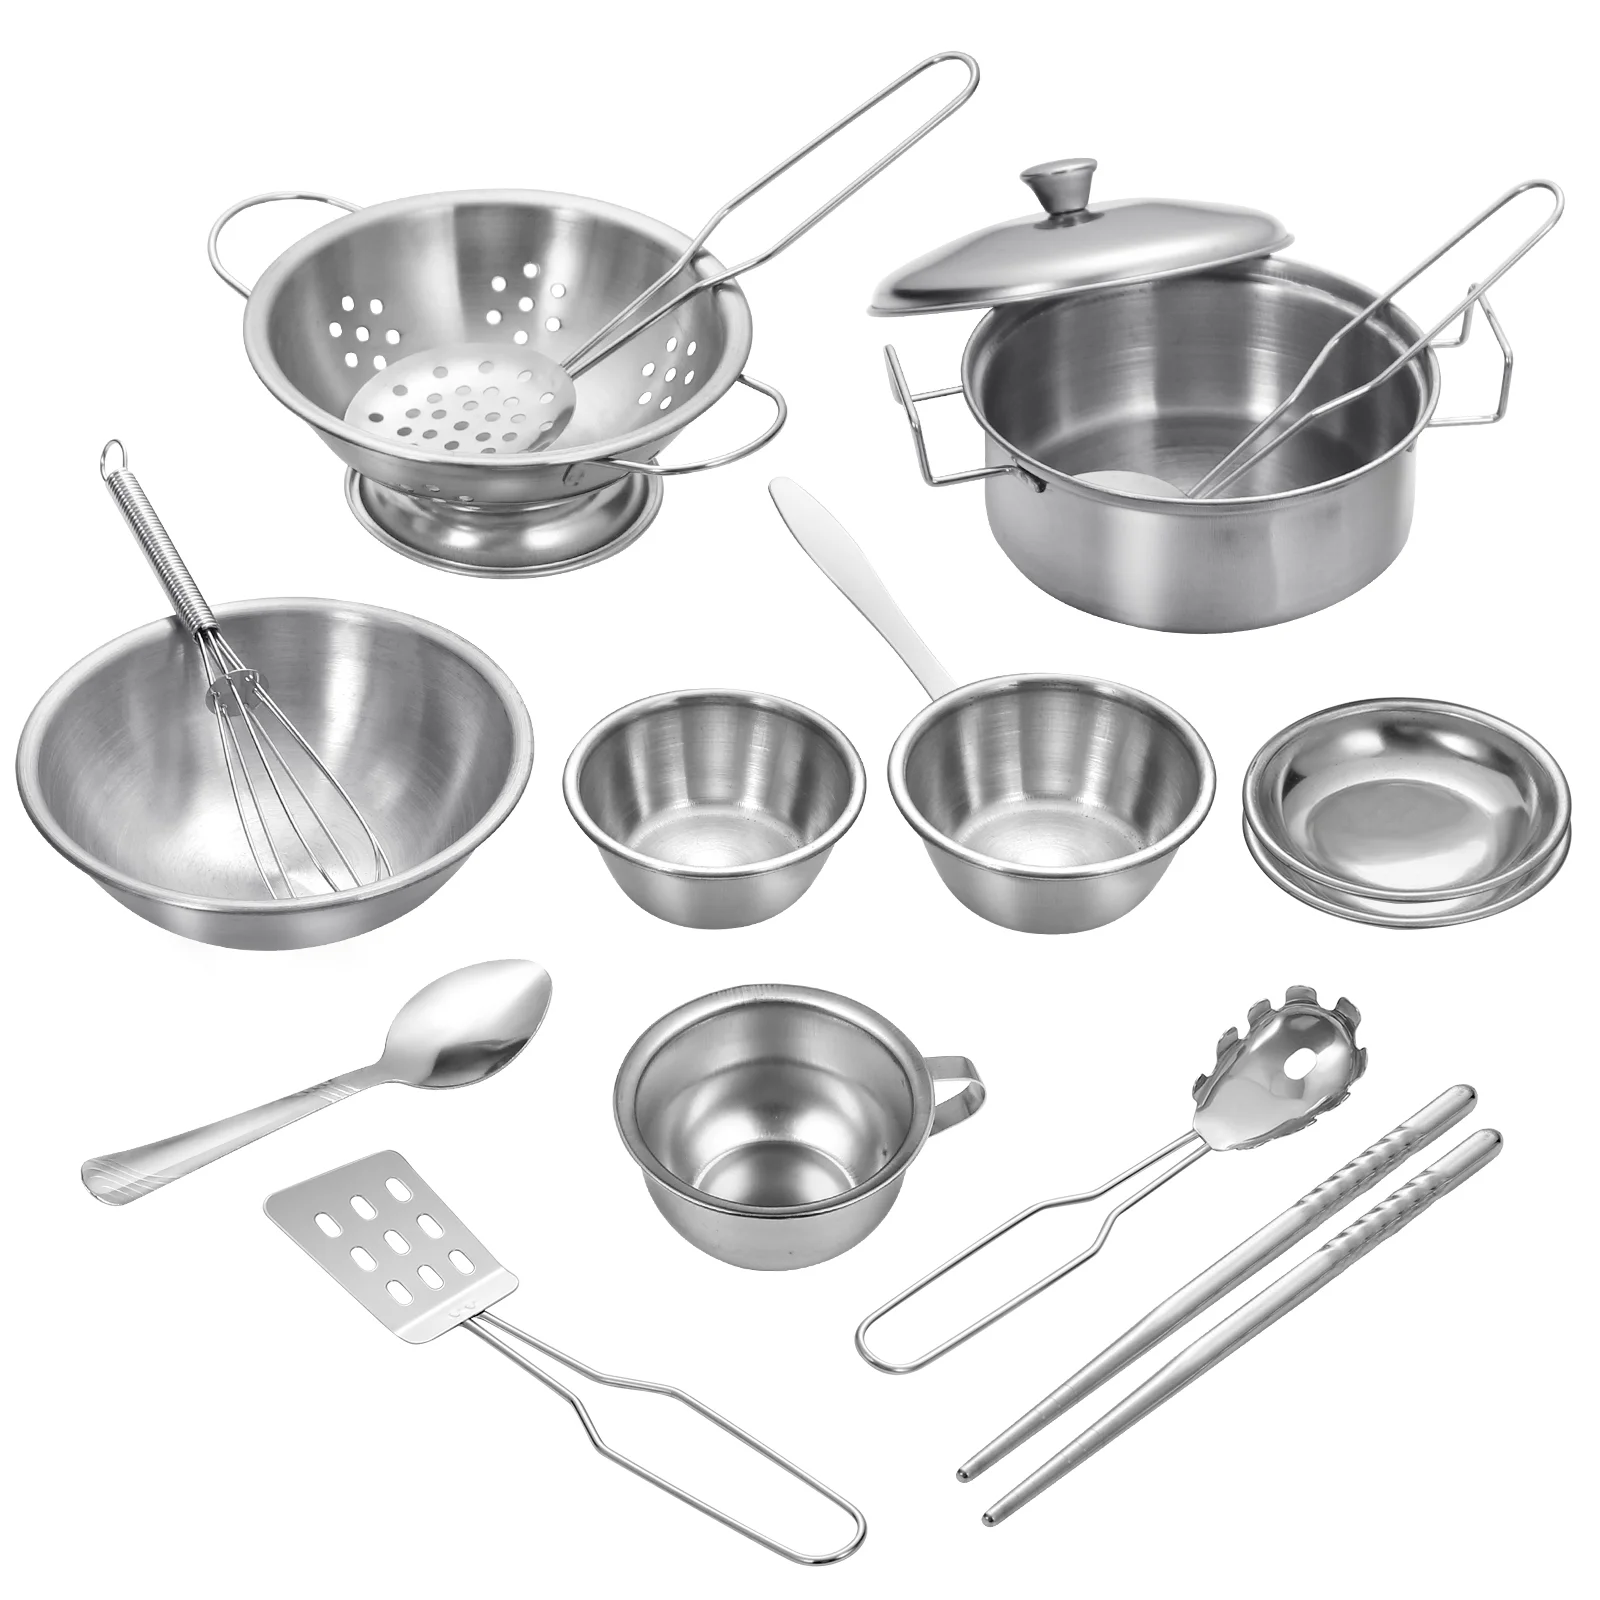 

Кухонные принадлежности для ролевых игр, Детские кастрюли и сковородки из нержавеющей стали, набор кухонных принадлежностей, обучающий инструмент для ролевых игр